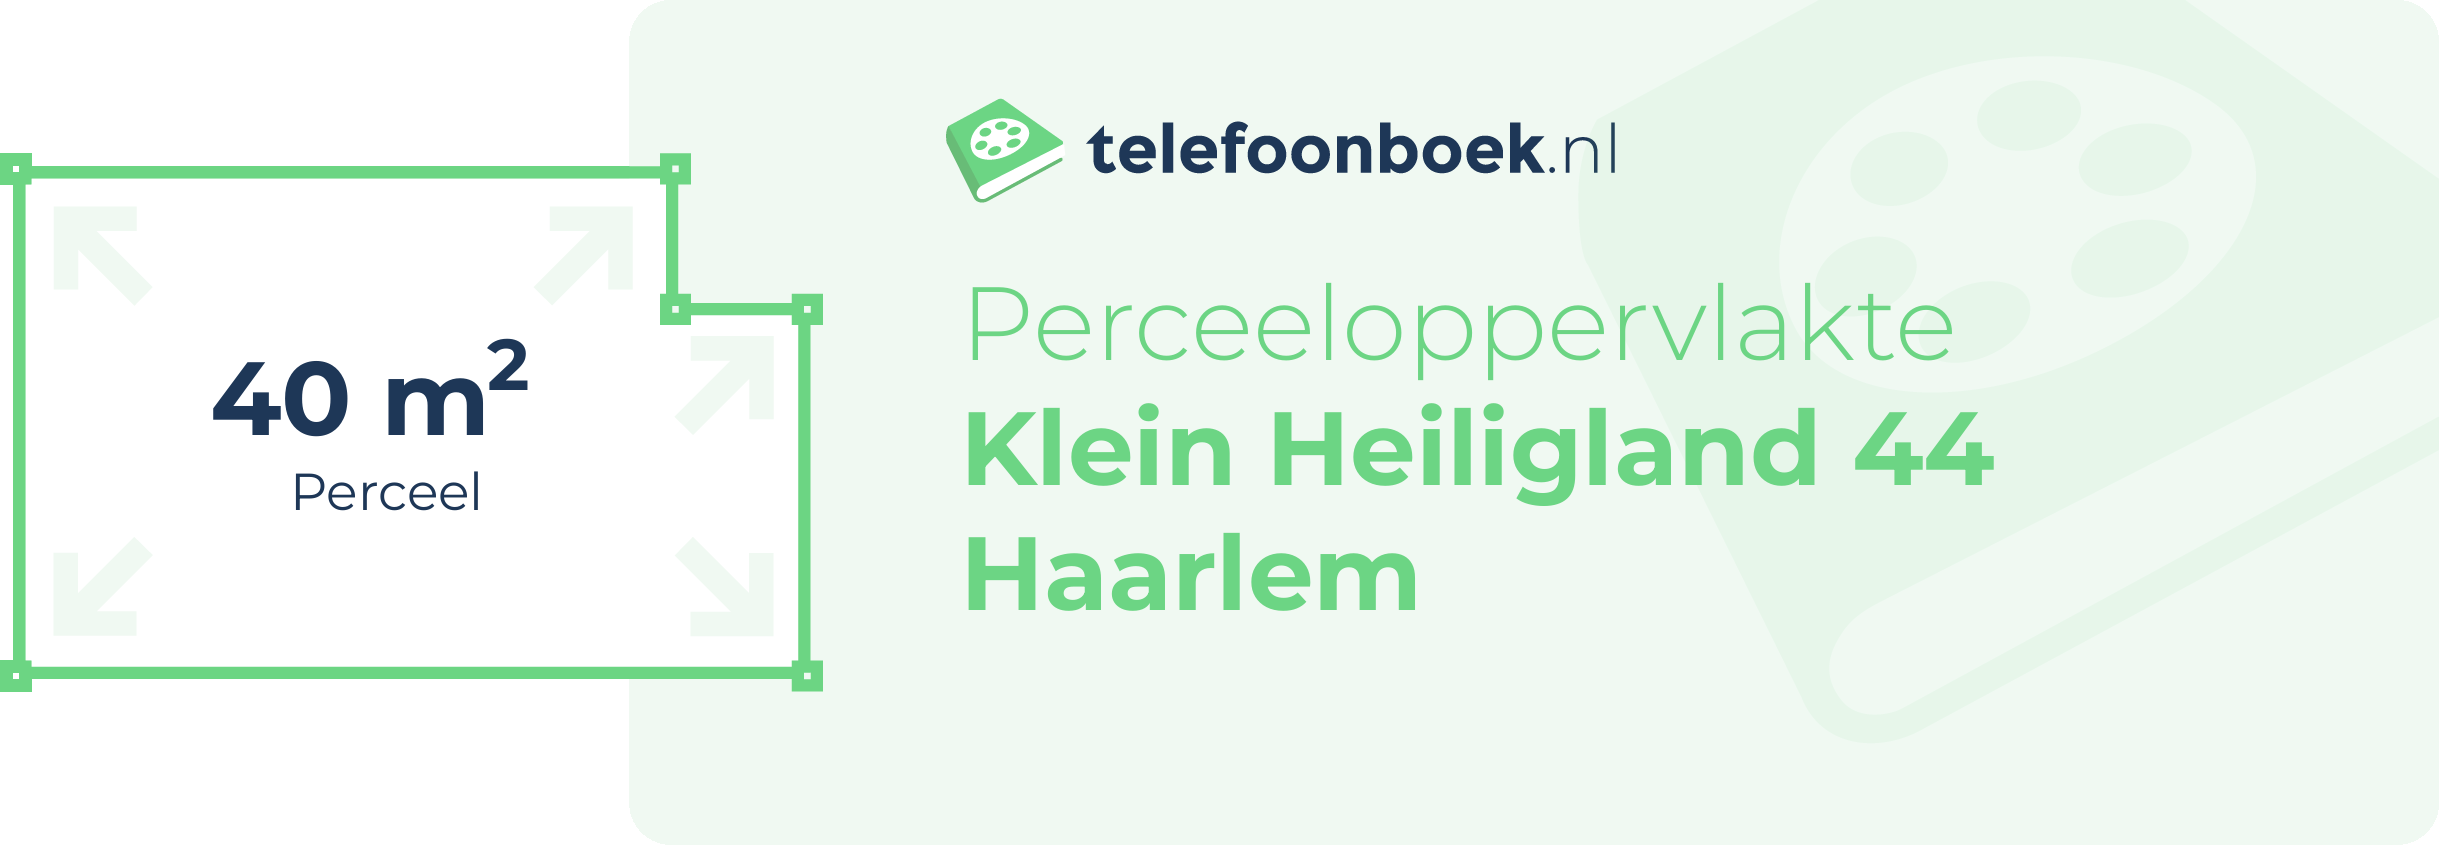 Perceeloppervlakte Klein Heiligland 44 Haarlem